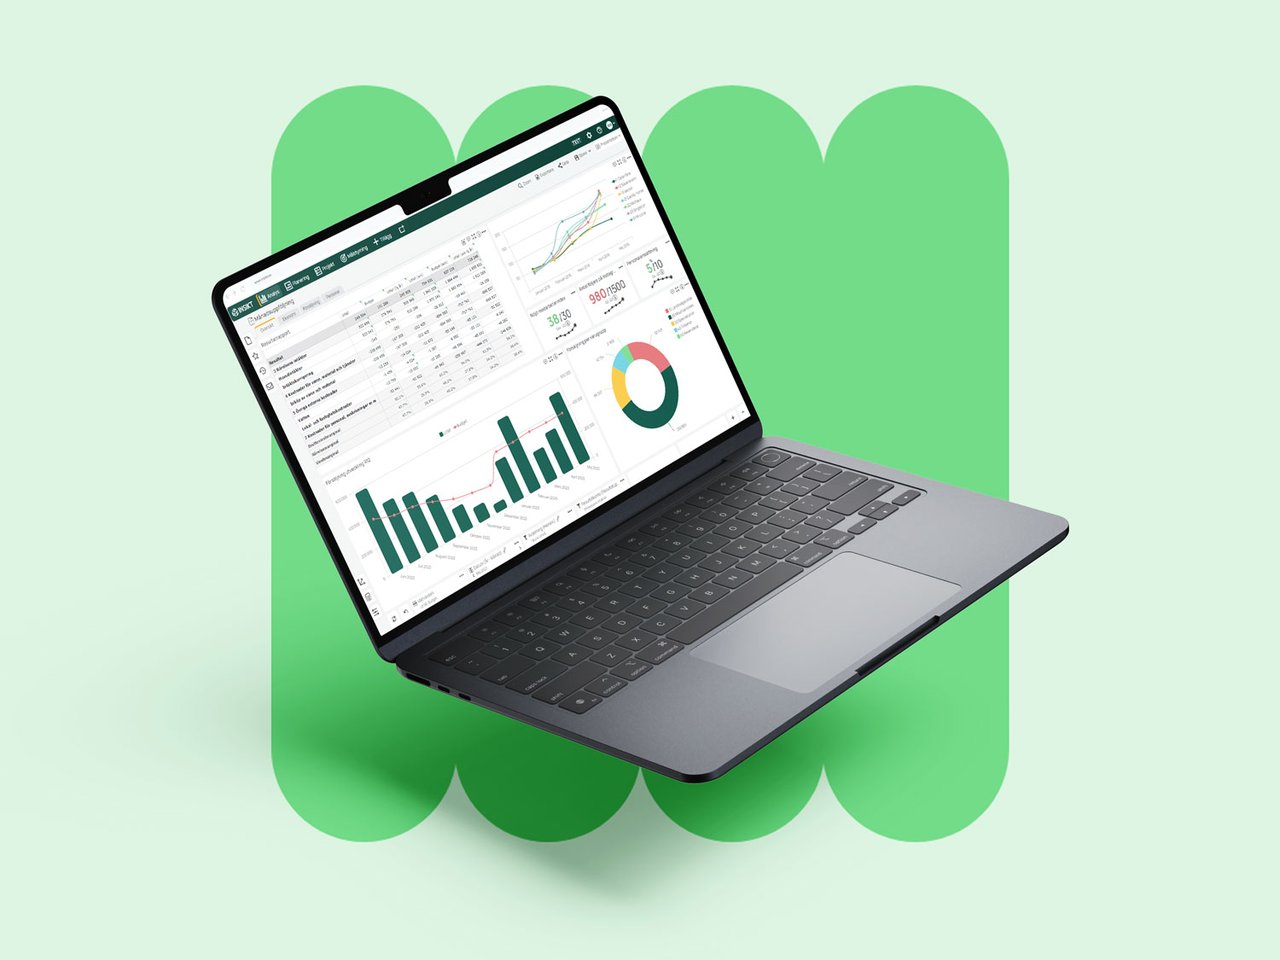 Analysis-laptop-green-pills-on-green